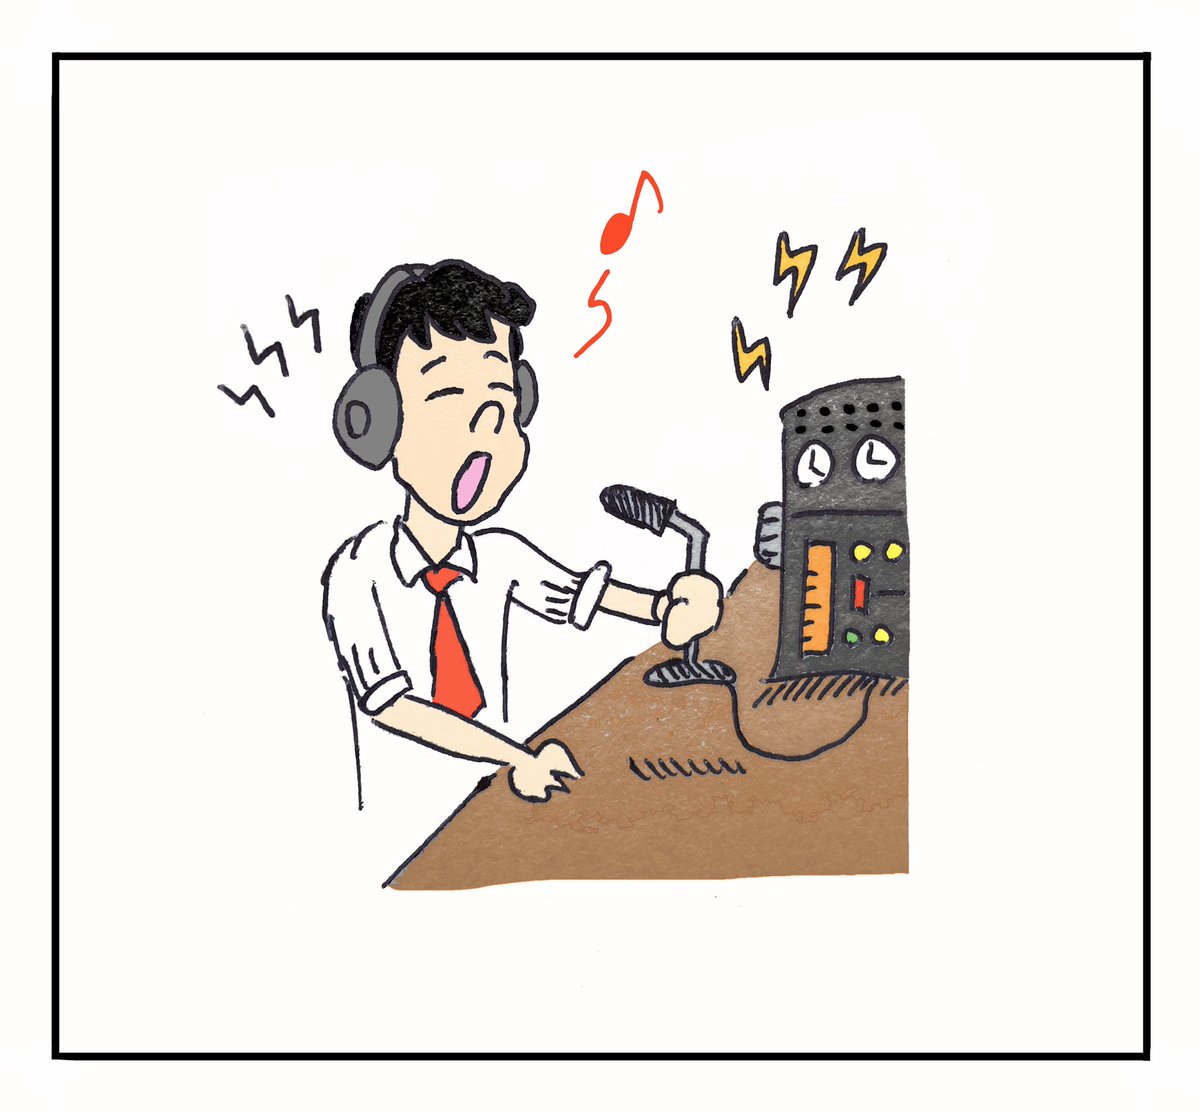 Kazuki 練習中 4月18日 世界アマチュア無線の日 らくがき イラスト おうち時間 今日は何の日 世界アマチュア無線の日 絵描きさんと繋がりたい イラスト好きな人と繋がりたい 落書き好きさんと繋がりたい